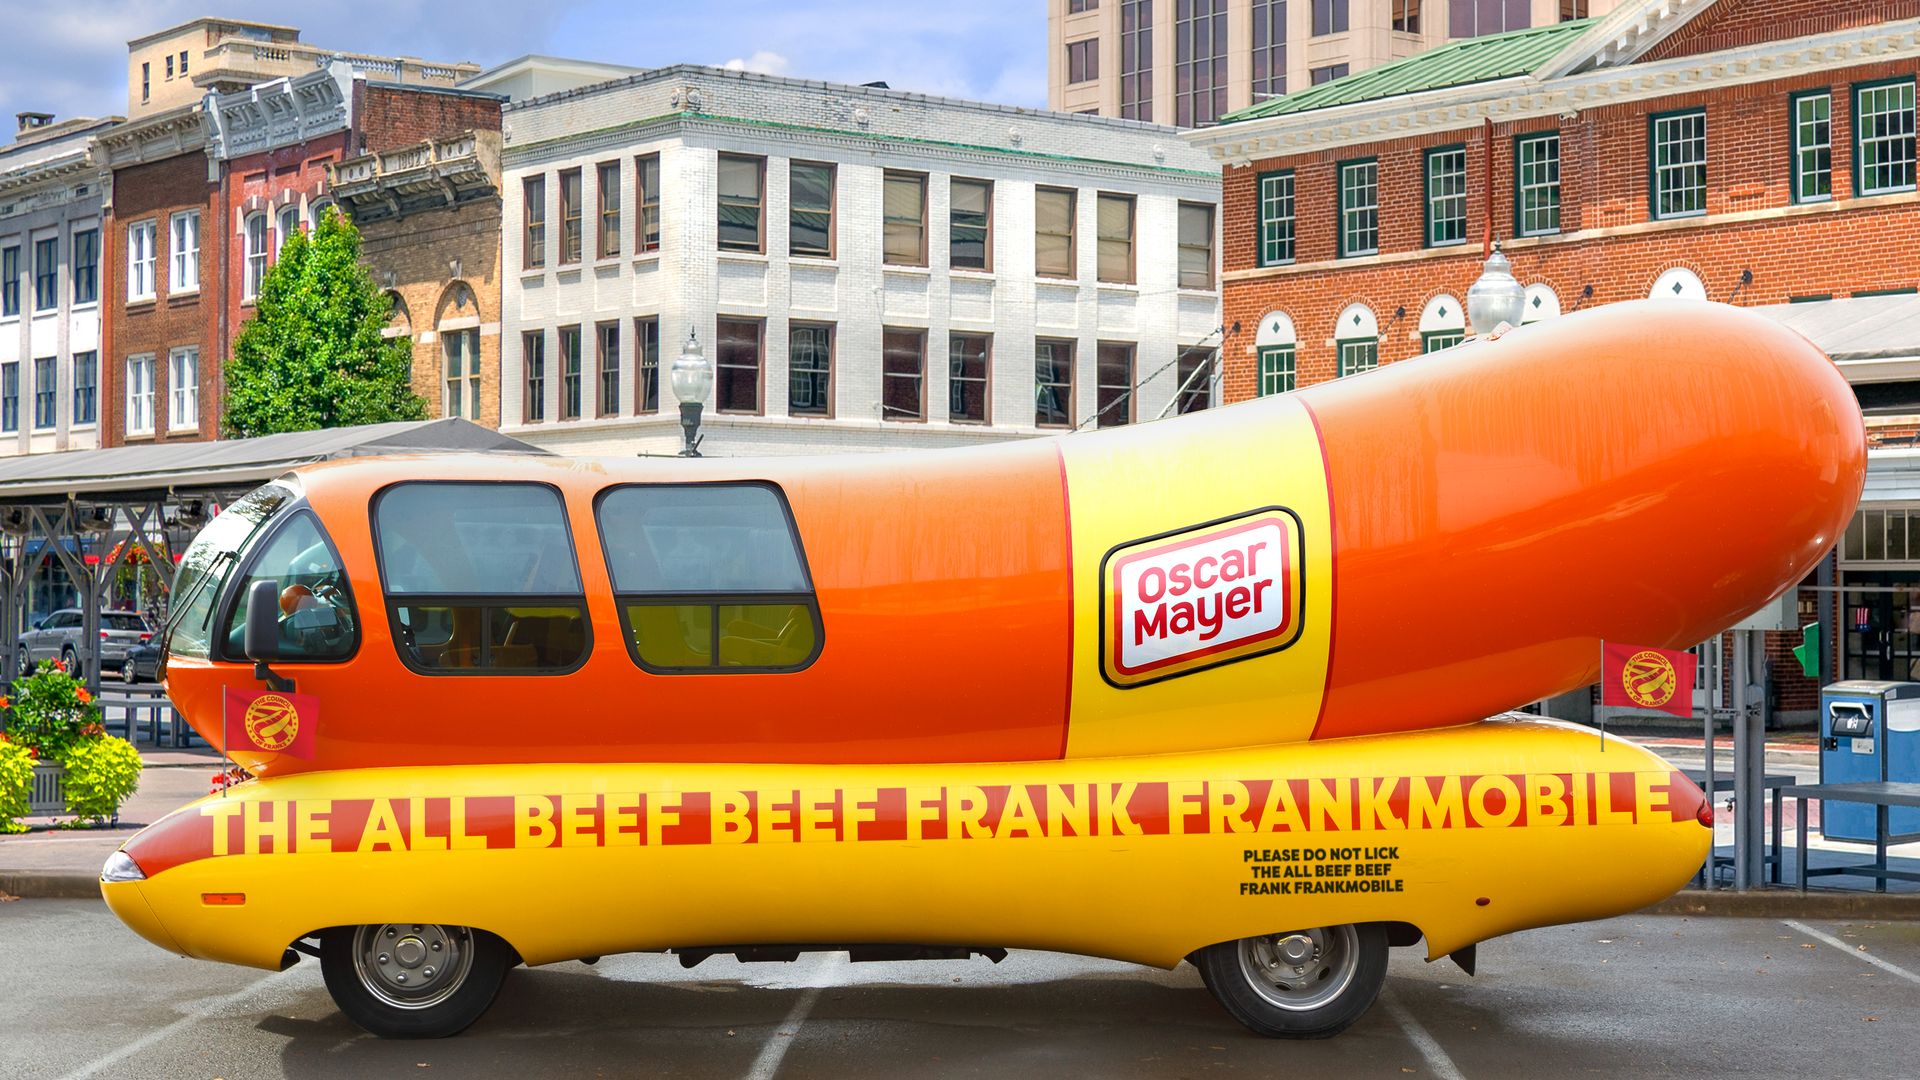 Oscar Mayer Wienermobile has been renamed Frankmobile